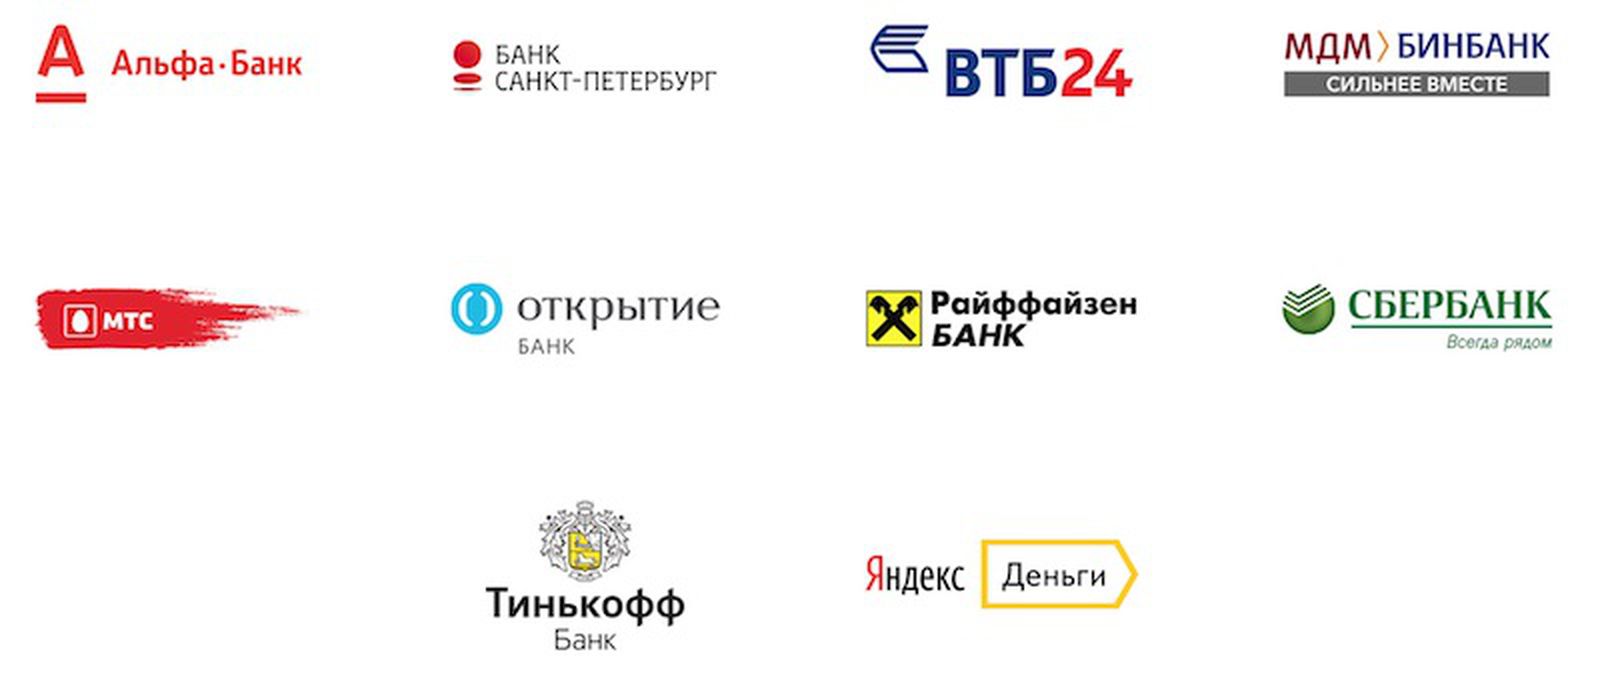 Банки партнеры юникредит банка